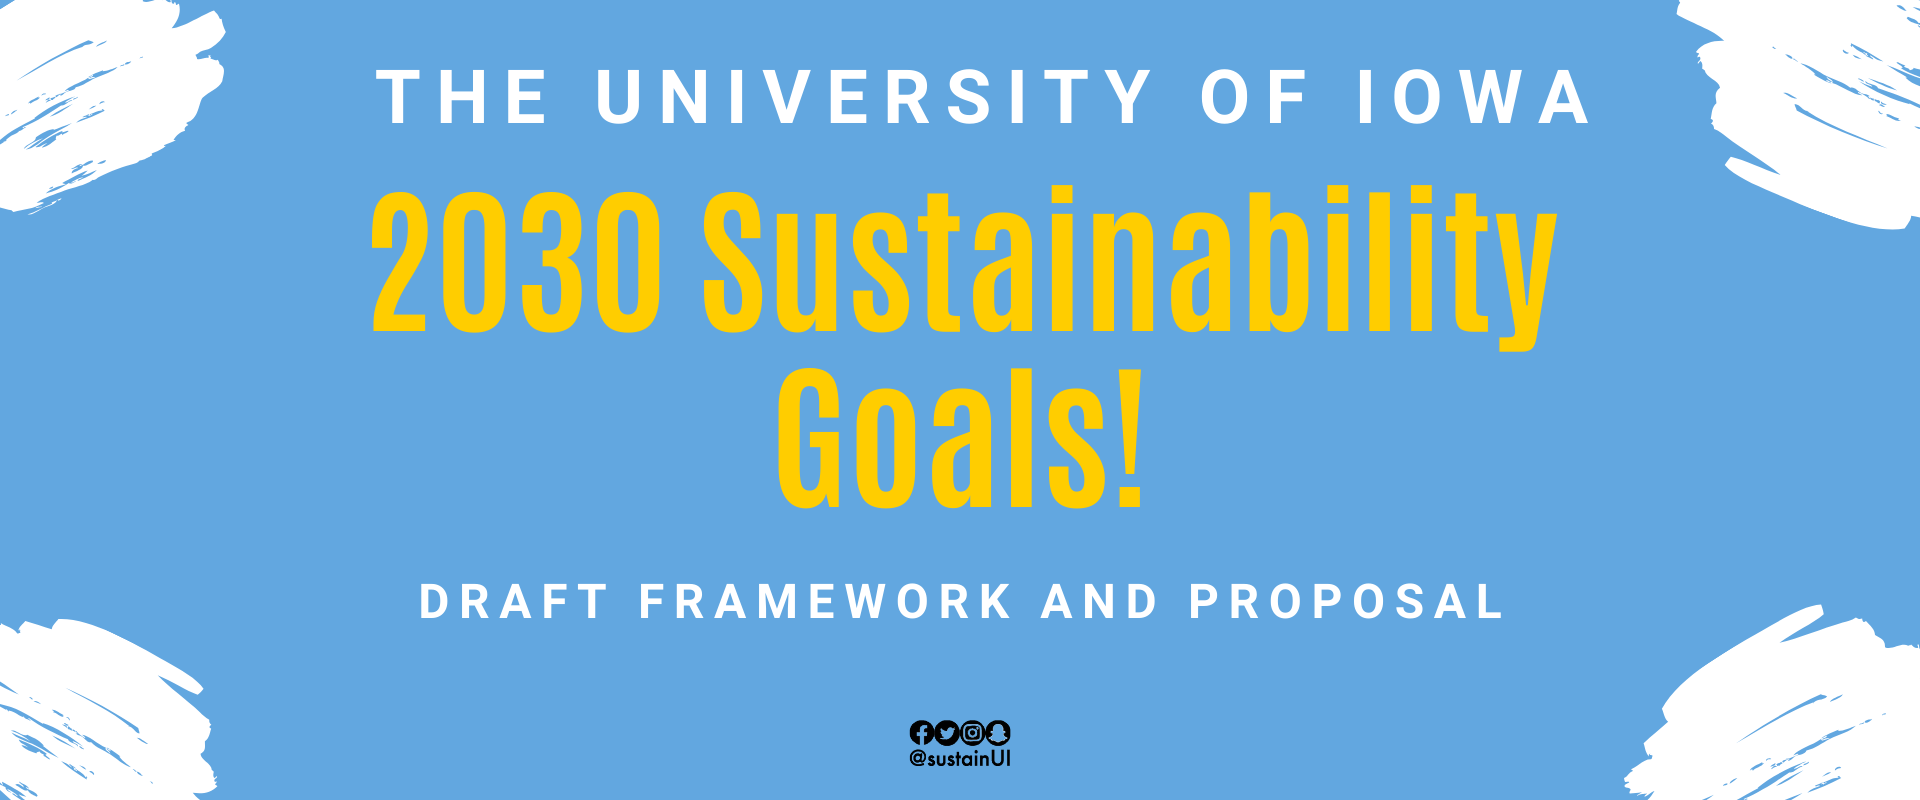 2030 Sustainability Goals banner